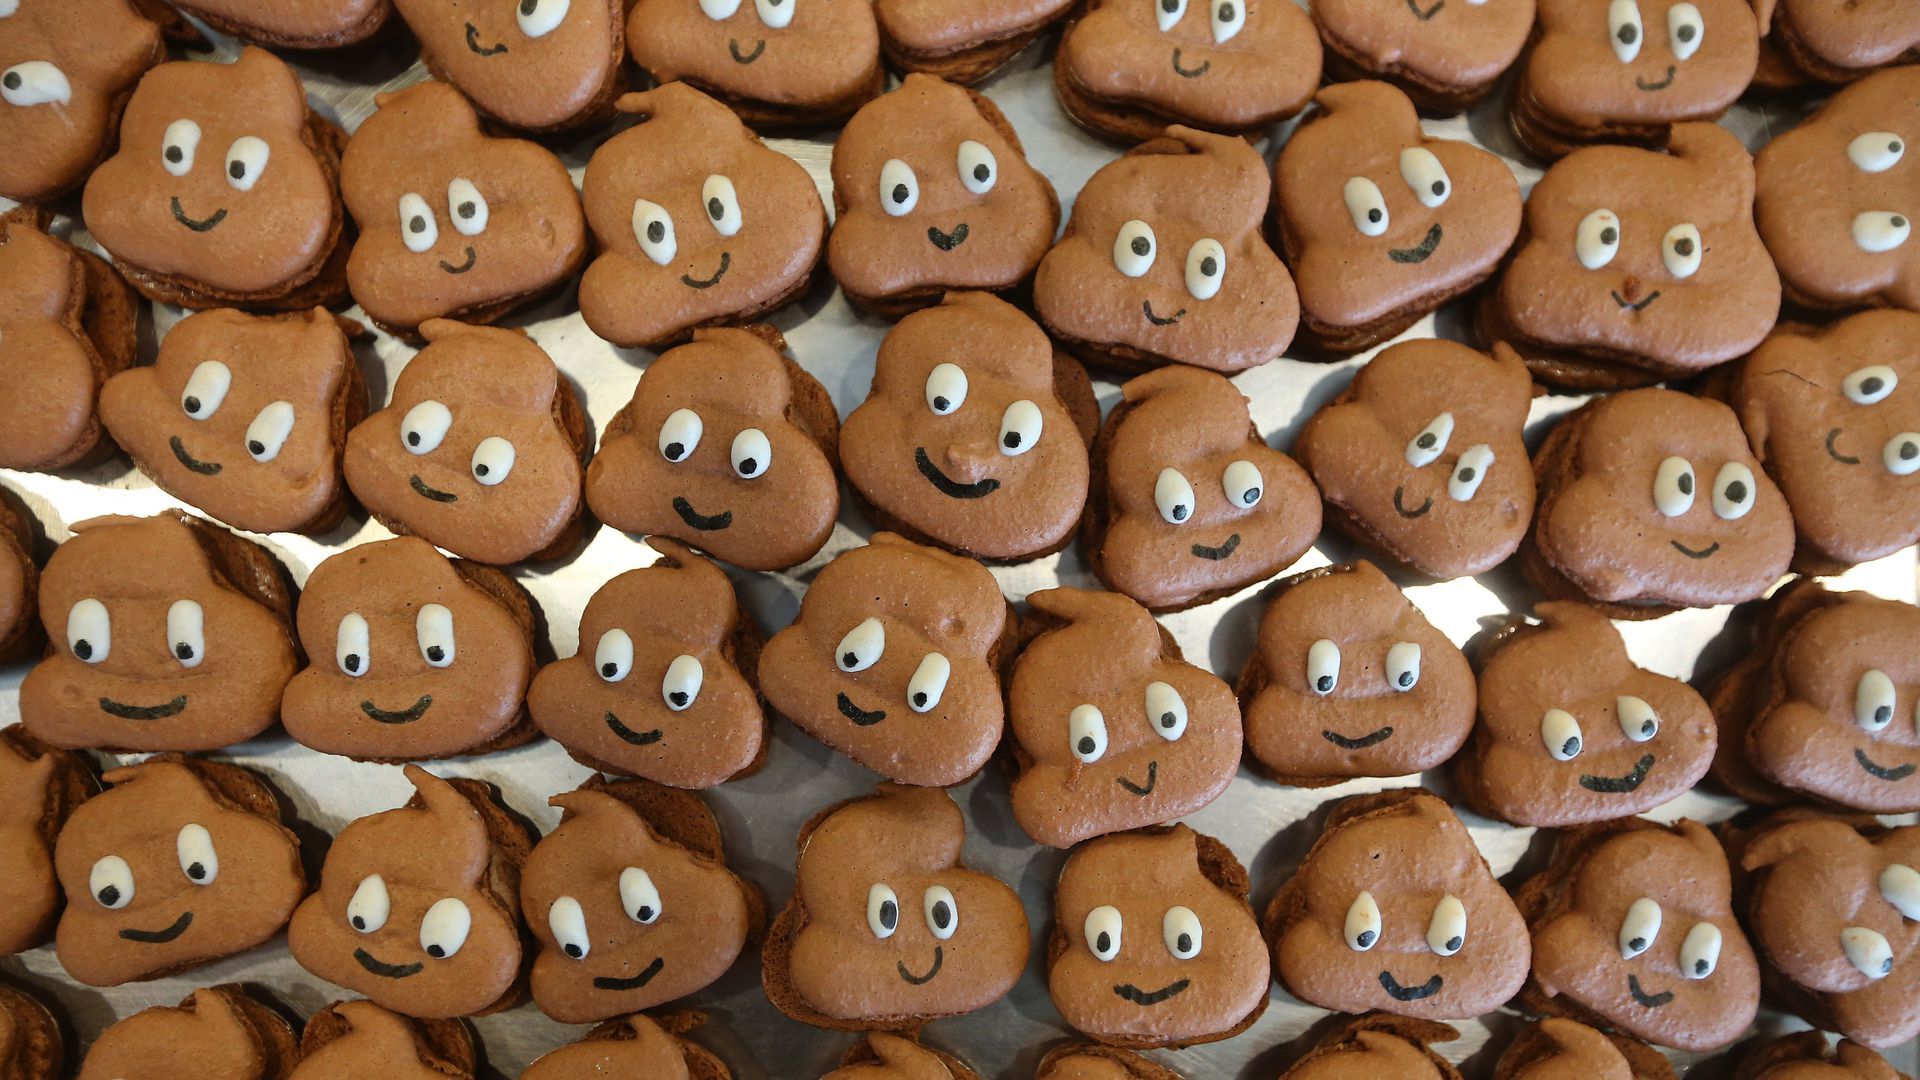 Poop emoji cookies in piles